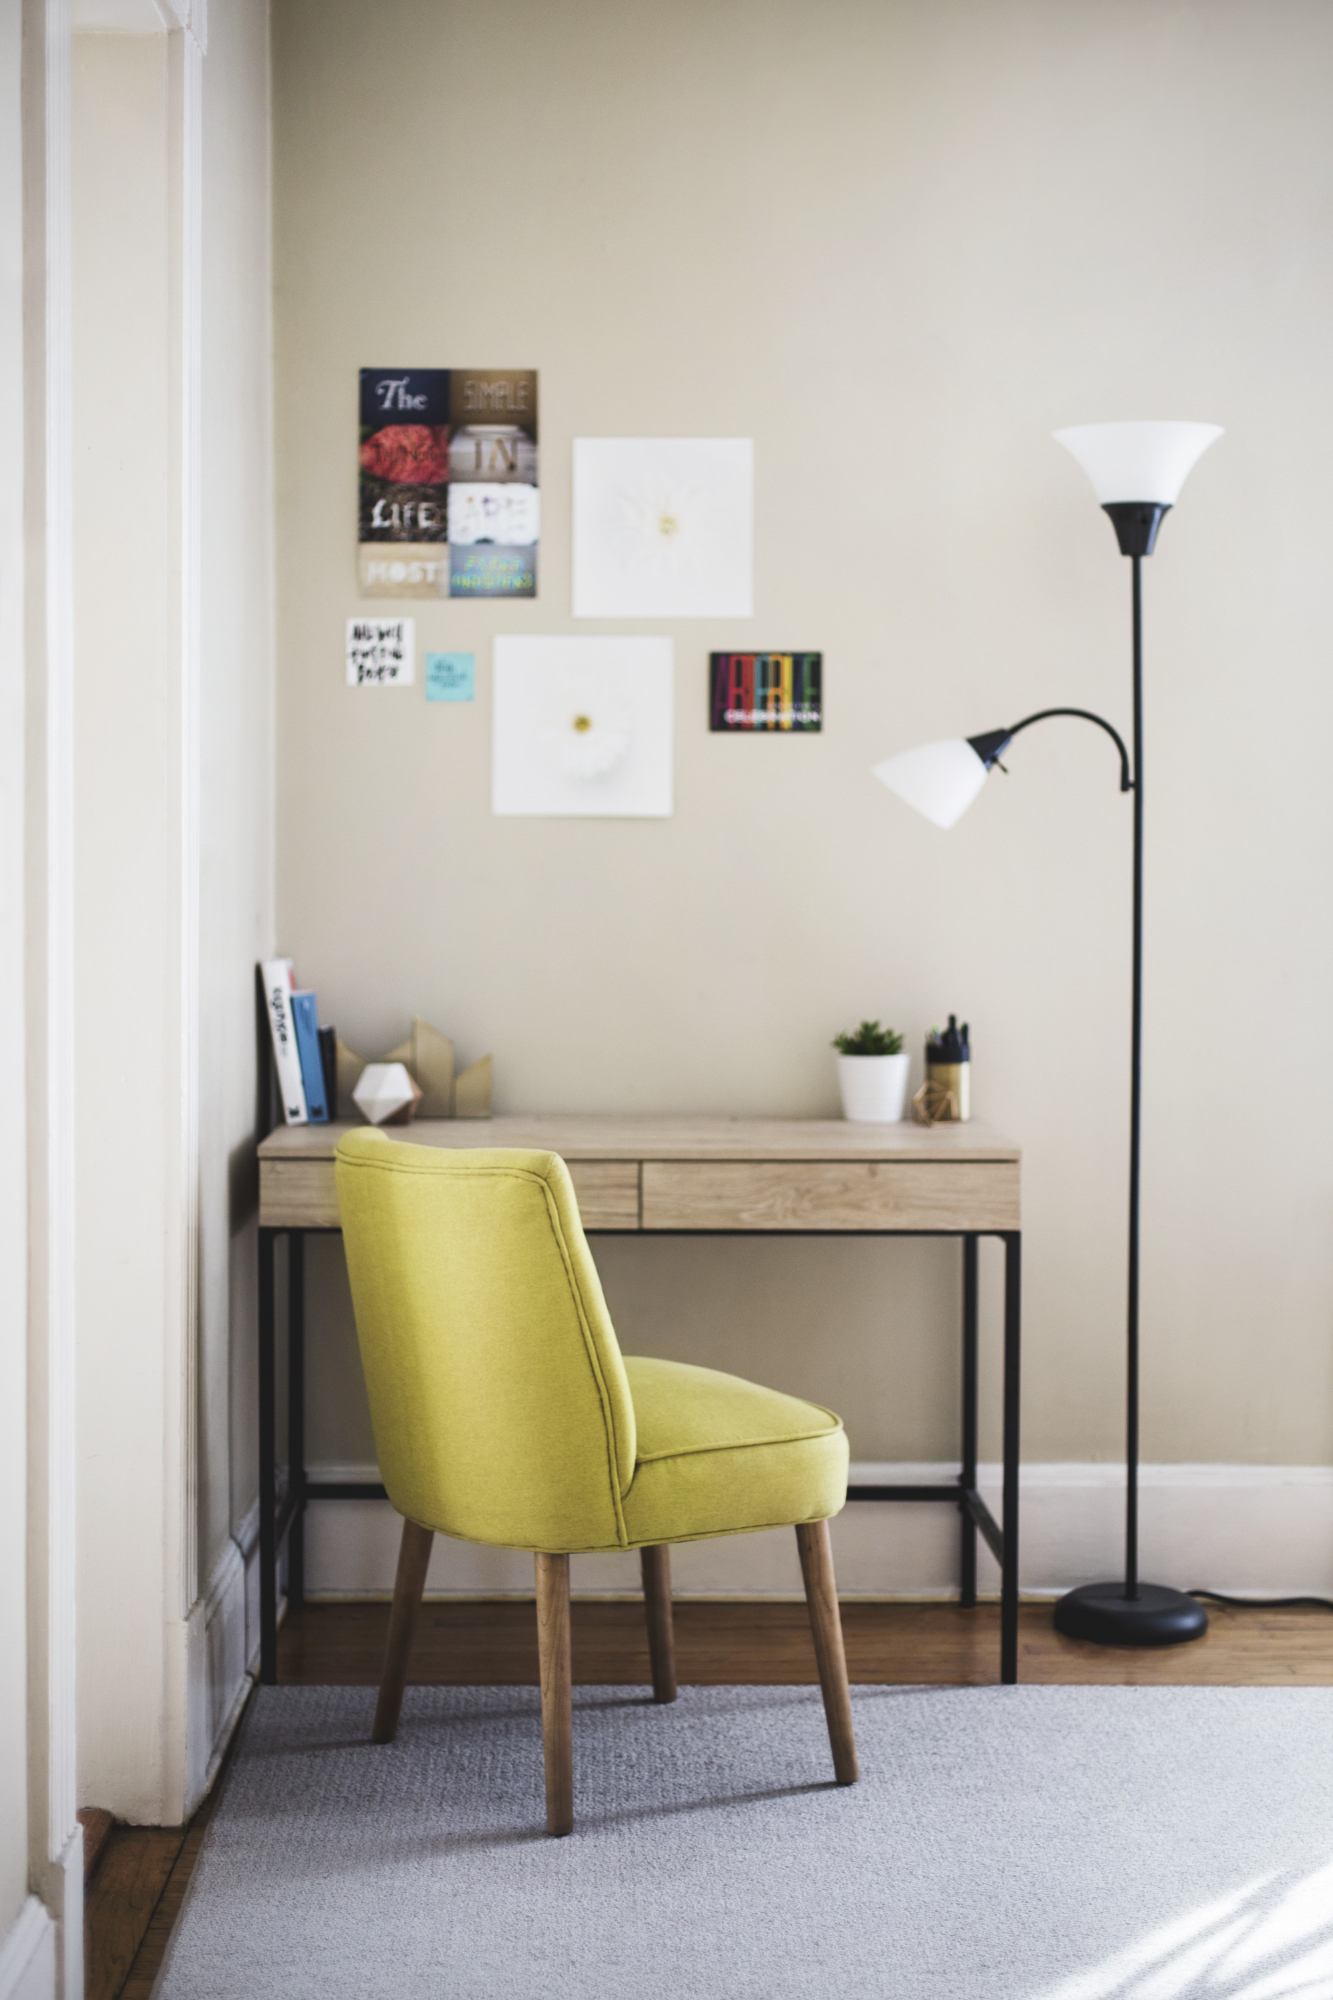 L'Agence BLEU, oin de lecture confortable et vivant. Une chaise de style moderne de couleur jaune vif attire l'attention, apportant une touche de couleur vive à l'ensemble. À côté de la chaise, une haute lampe sur pied diffuse une lumière douce, créant un environnement parfait pour la lecture. Une table en bois de forme carrée, placée juste à côté de la chaise, sert de support pour plusieurs livres et pots de plantes, ajoutant un élément naturel à la scène. L'image dégage une atmosphère chaleureuse et accueillante, invitant à la détente et à la lecture.